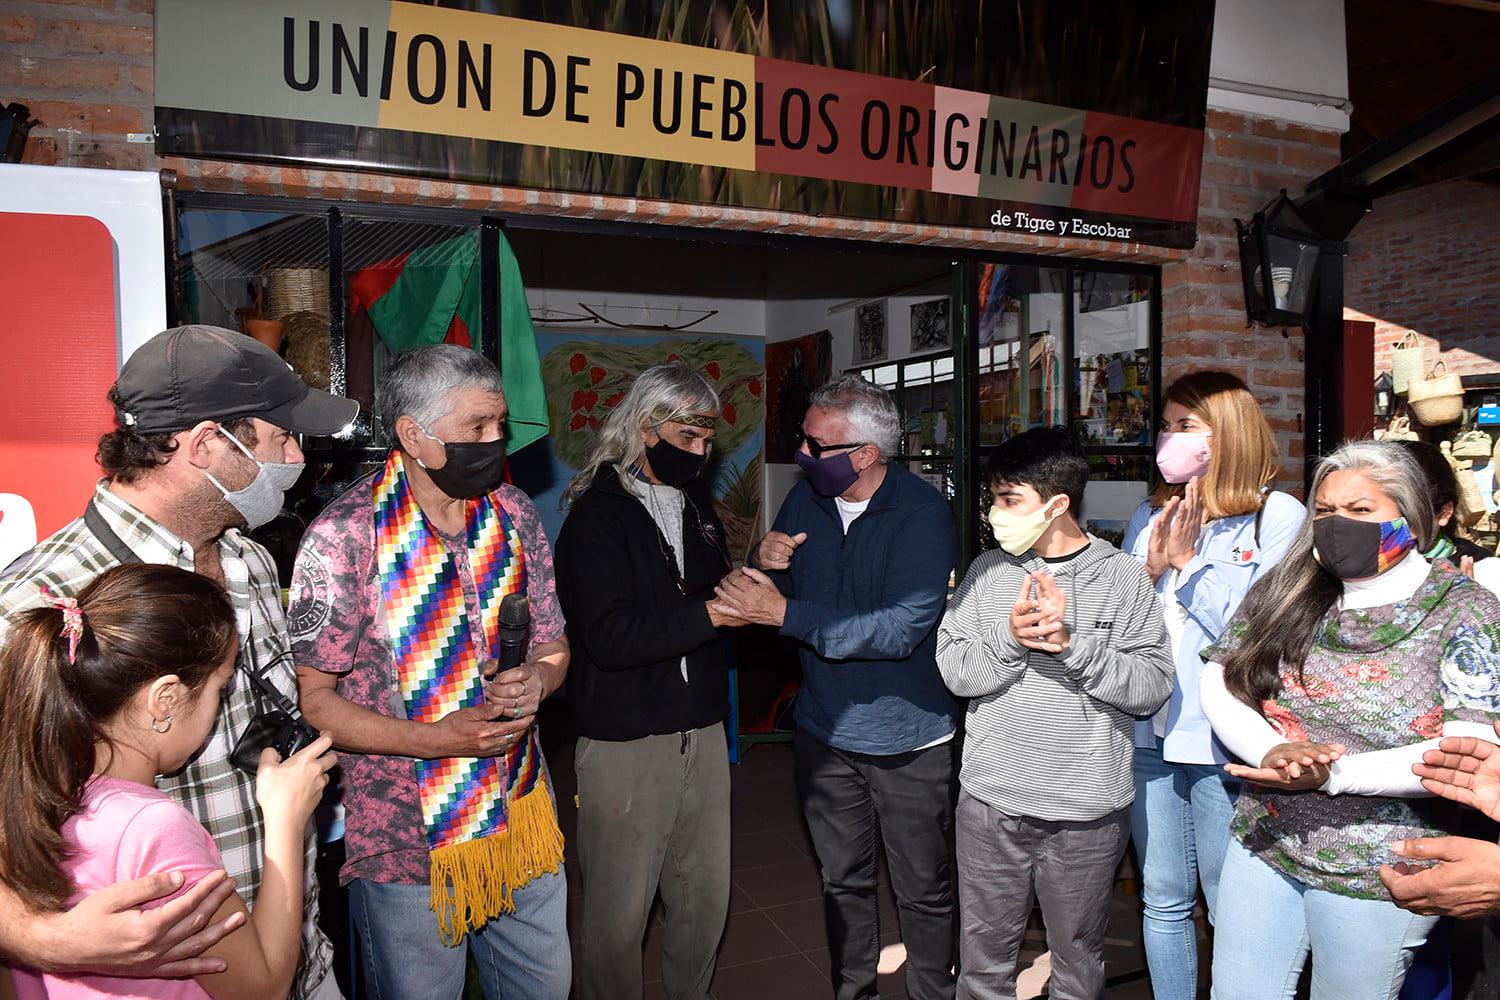 La Unión de Pueblos Originarios de Tigre y Escobar inauguró su local en el Puerto de Frutos